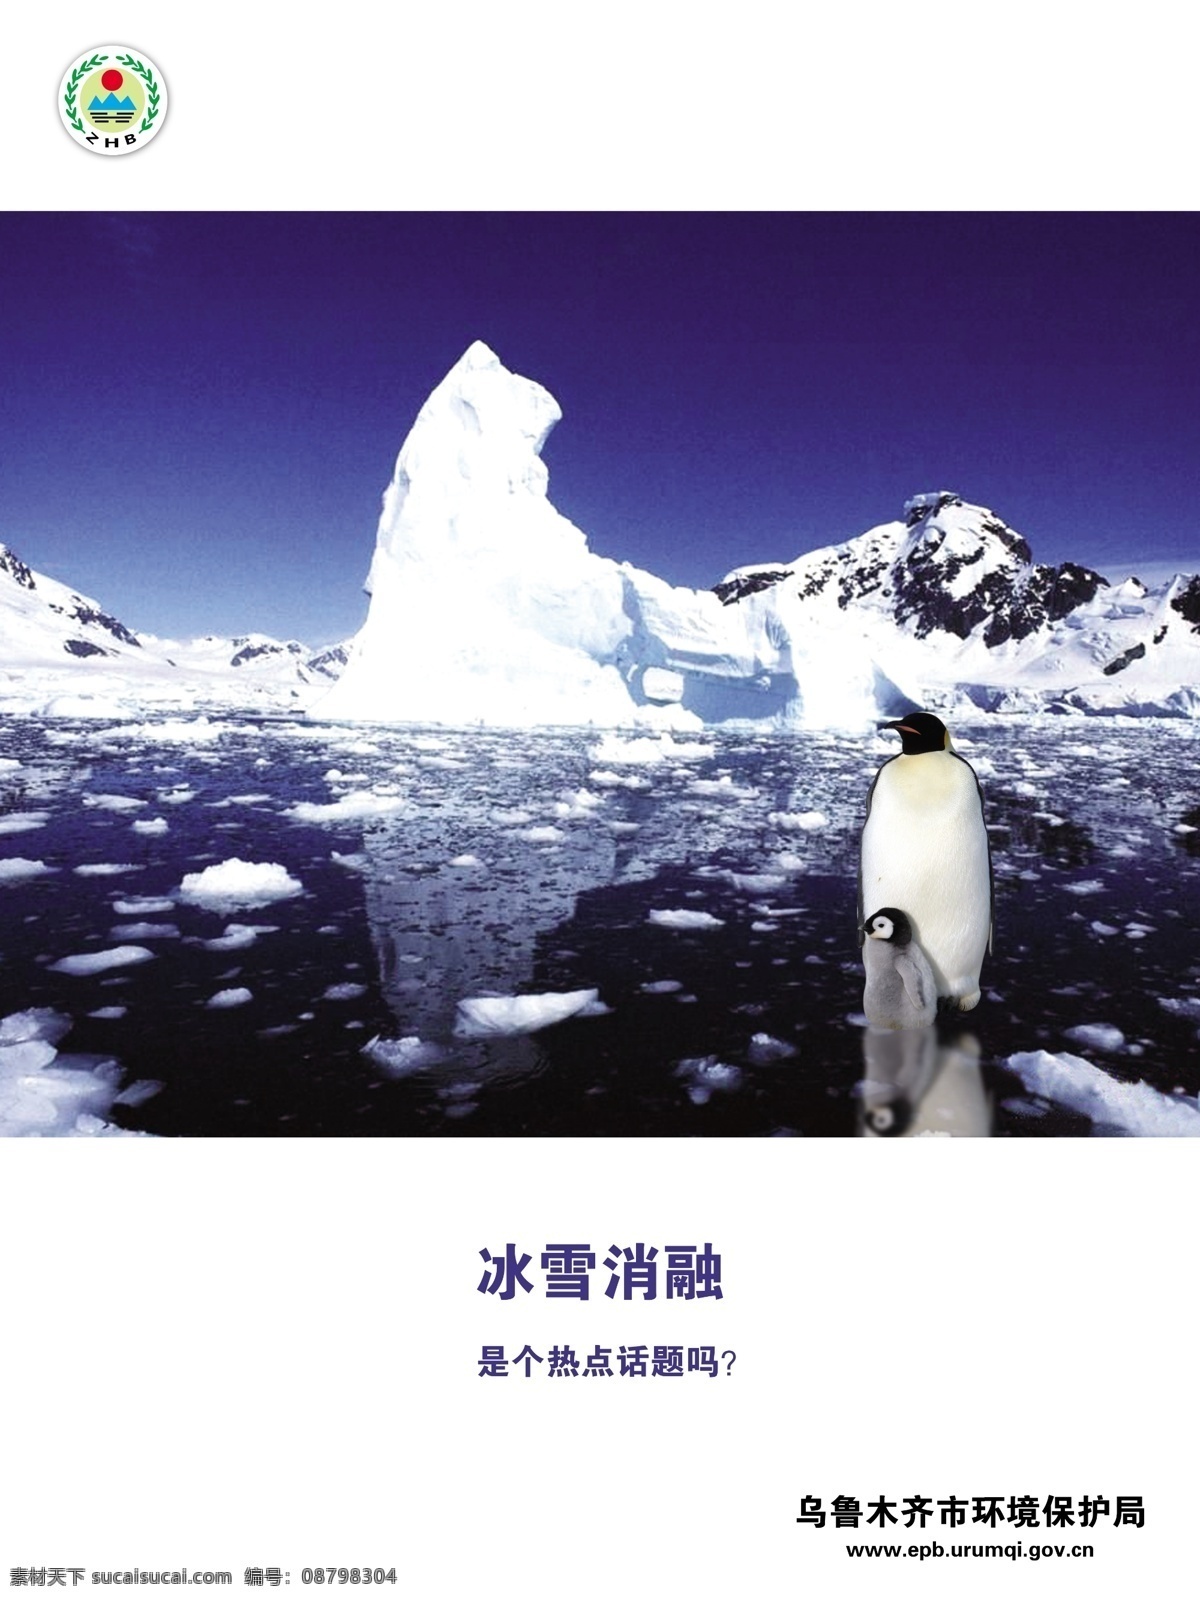 冰山企鹅 冰山 企鹅 冰雪 消融 公益广告 小企鹅 dm宣传单 广告设计模板 源文件